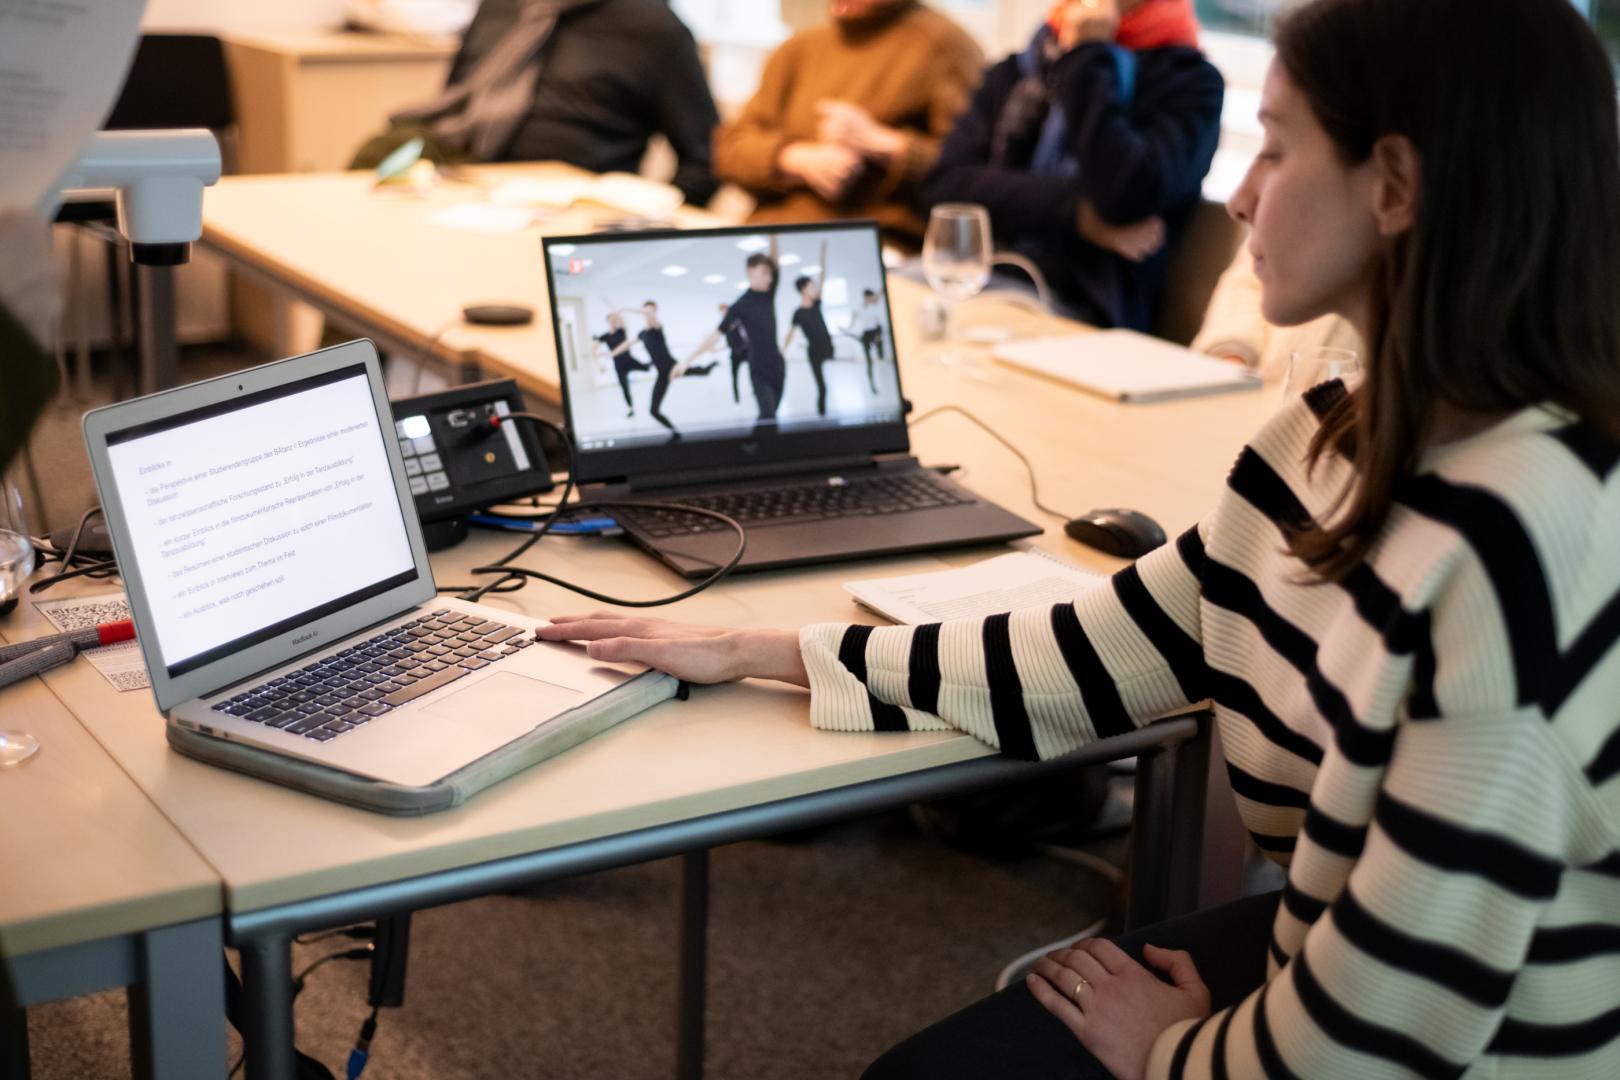 Im Vordergrund rechts sehen wir eine Frau im Profil, die sitzt und auf zwei Laptops links von ihr blickt. Ein Laptop zeigt Text, der andere das Still eines Tanzvideos. Im Hintergrund sind unscharf Zuhörende zu erkennen.